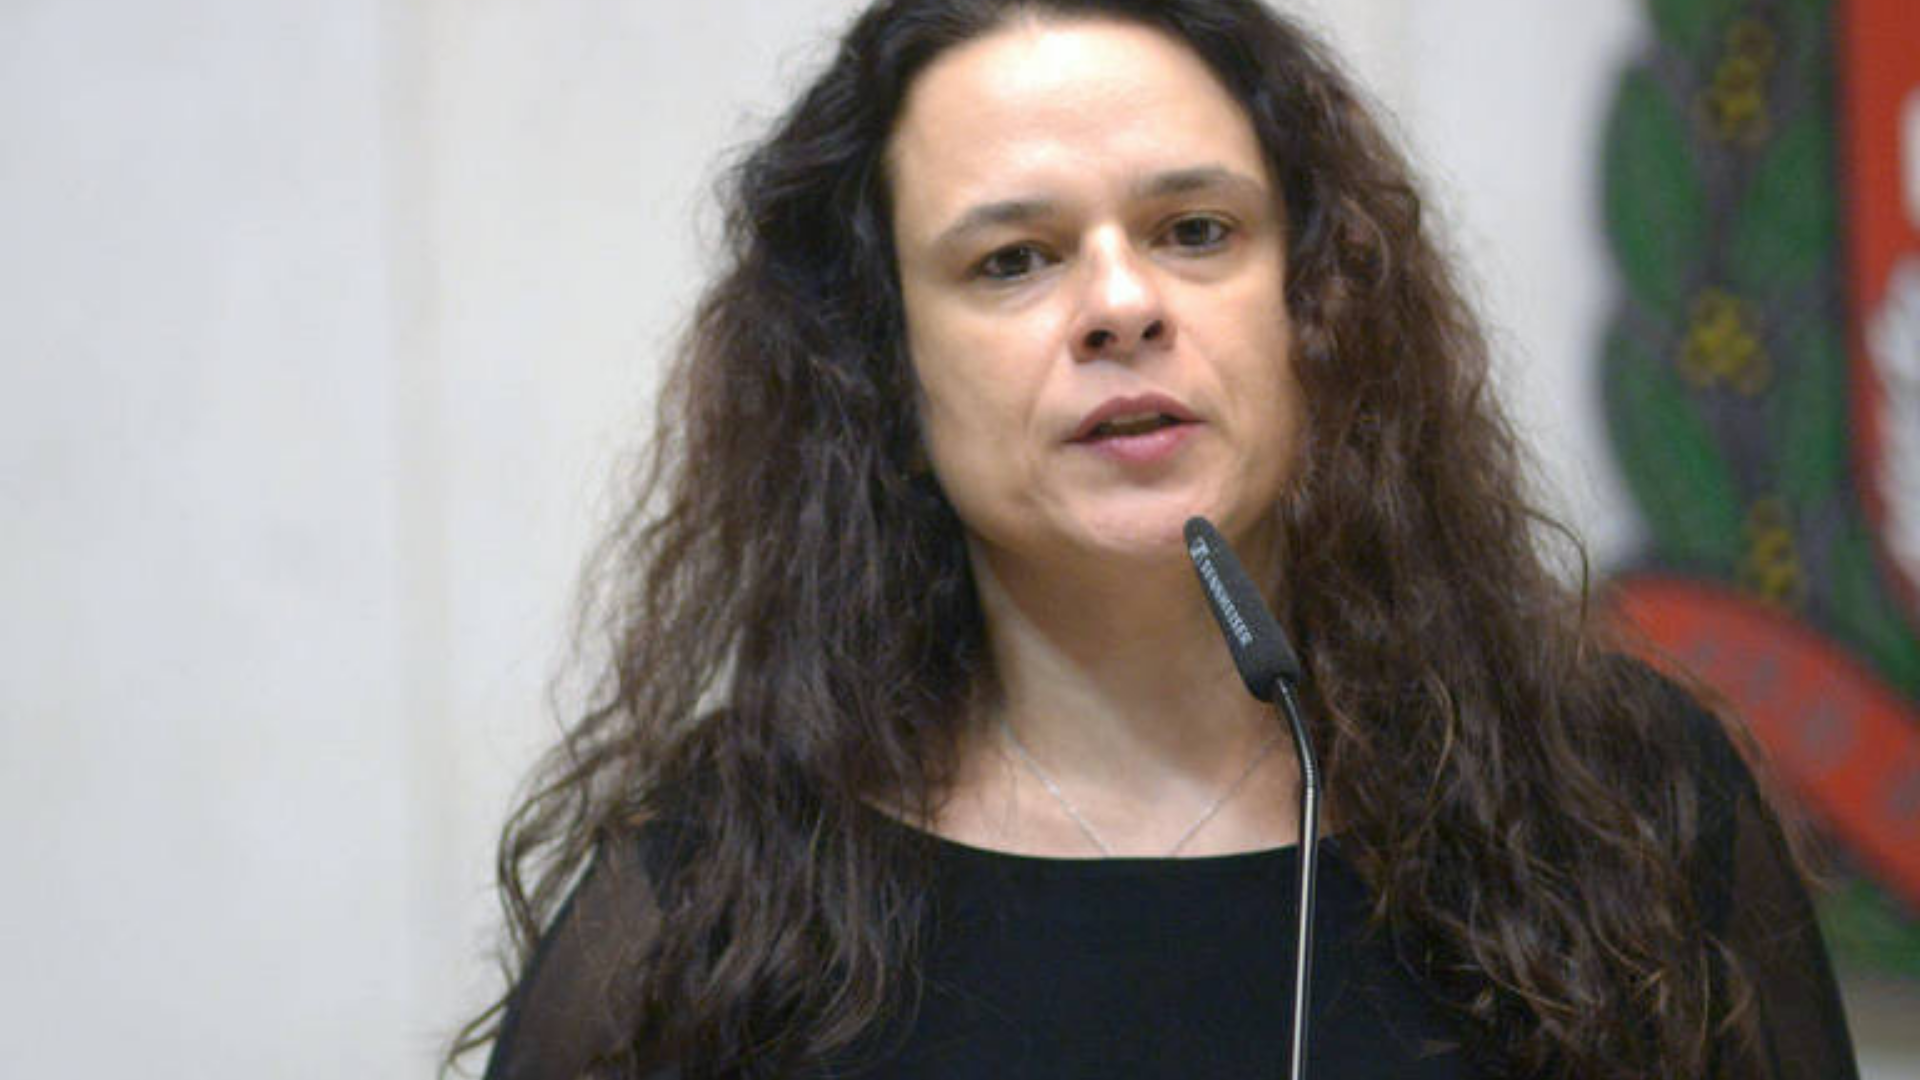 Janaina Paschoal defende a censura do “Fora Bolsonaro” no Lollapalooza. Foto de Janaina falando ao microfone na Alesp.